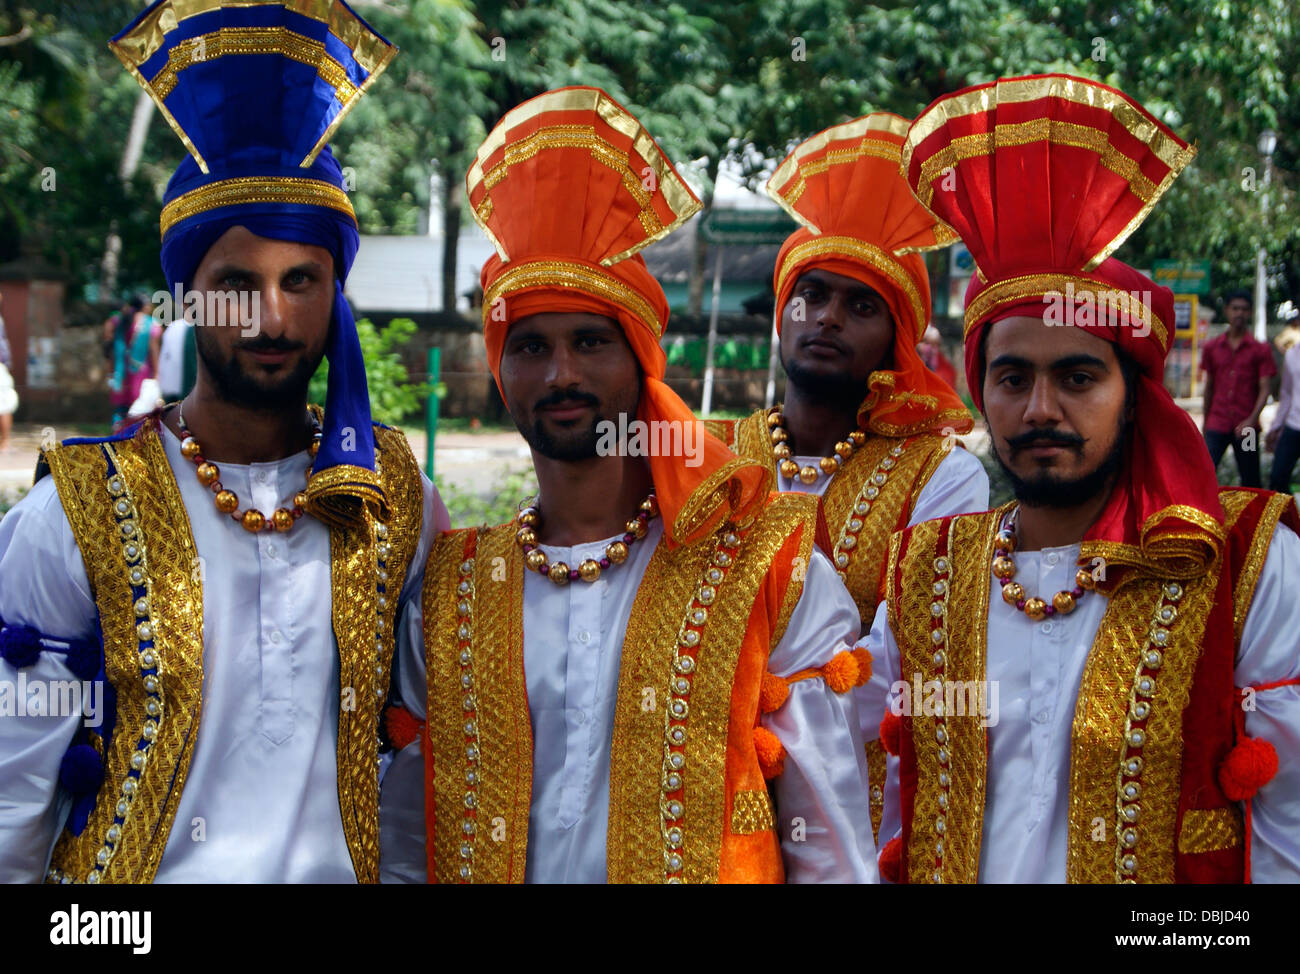 Punjabi traditional men Dress wearing India Stock Photo